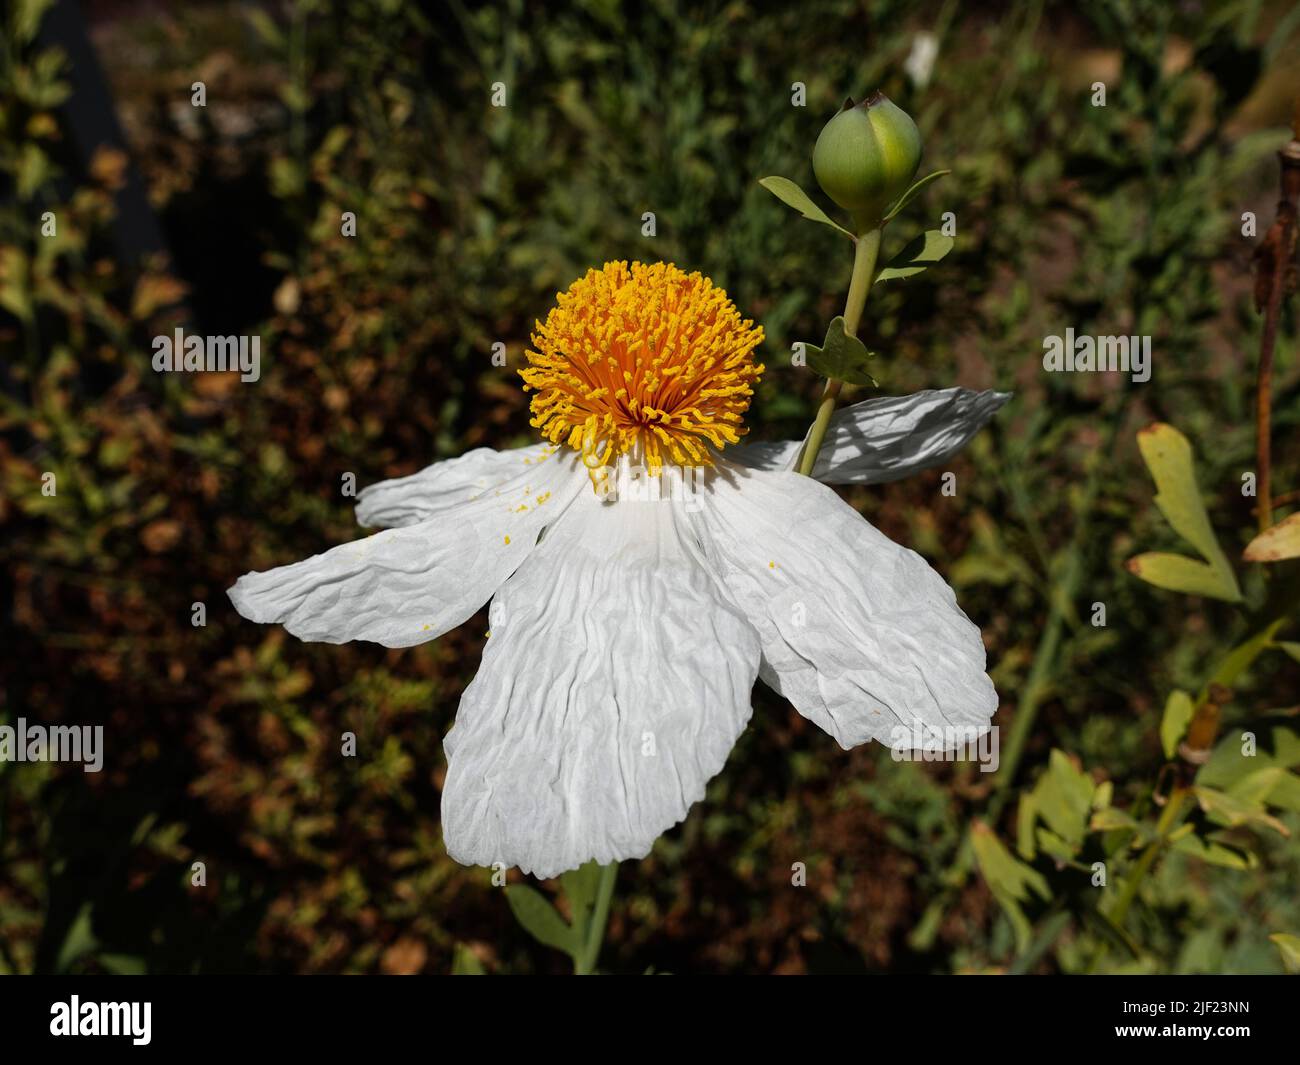 Single Matilija poppy and bud against background of foliage. Stock Photo